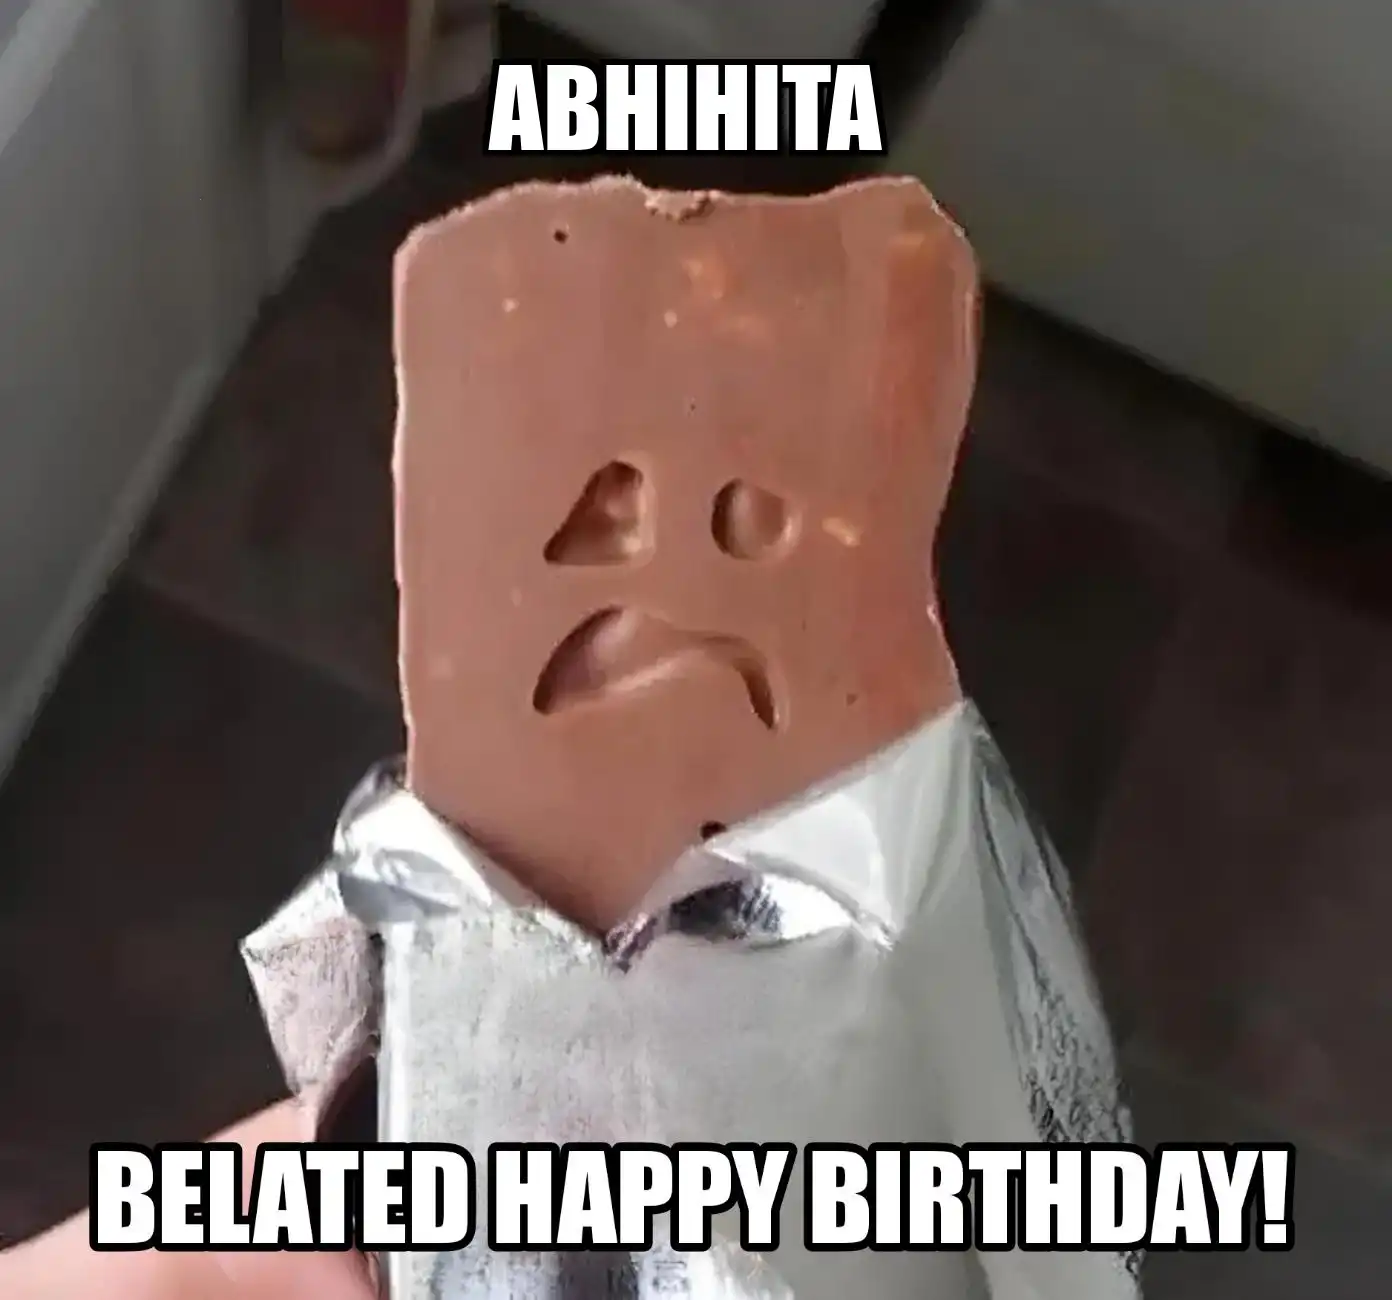 Happy Birthday Abhihita Belated Happy Birthday Meme